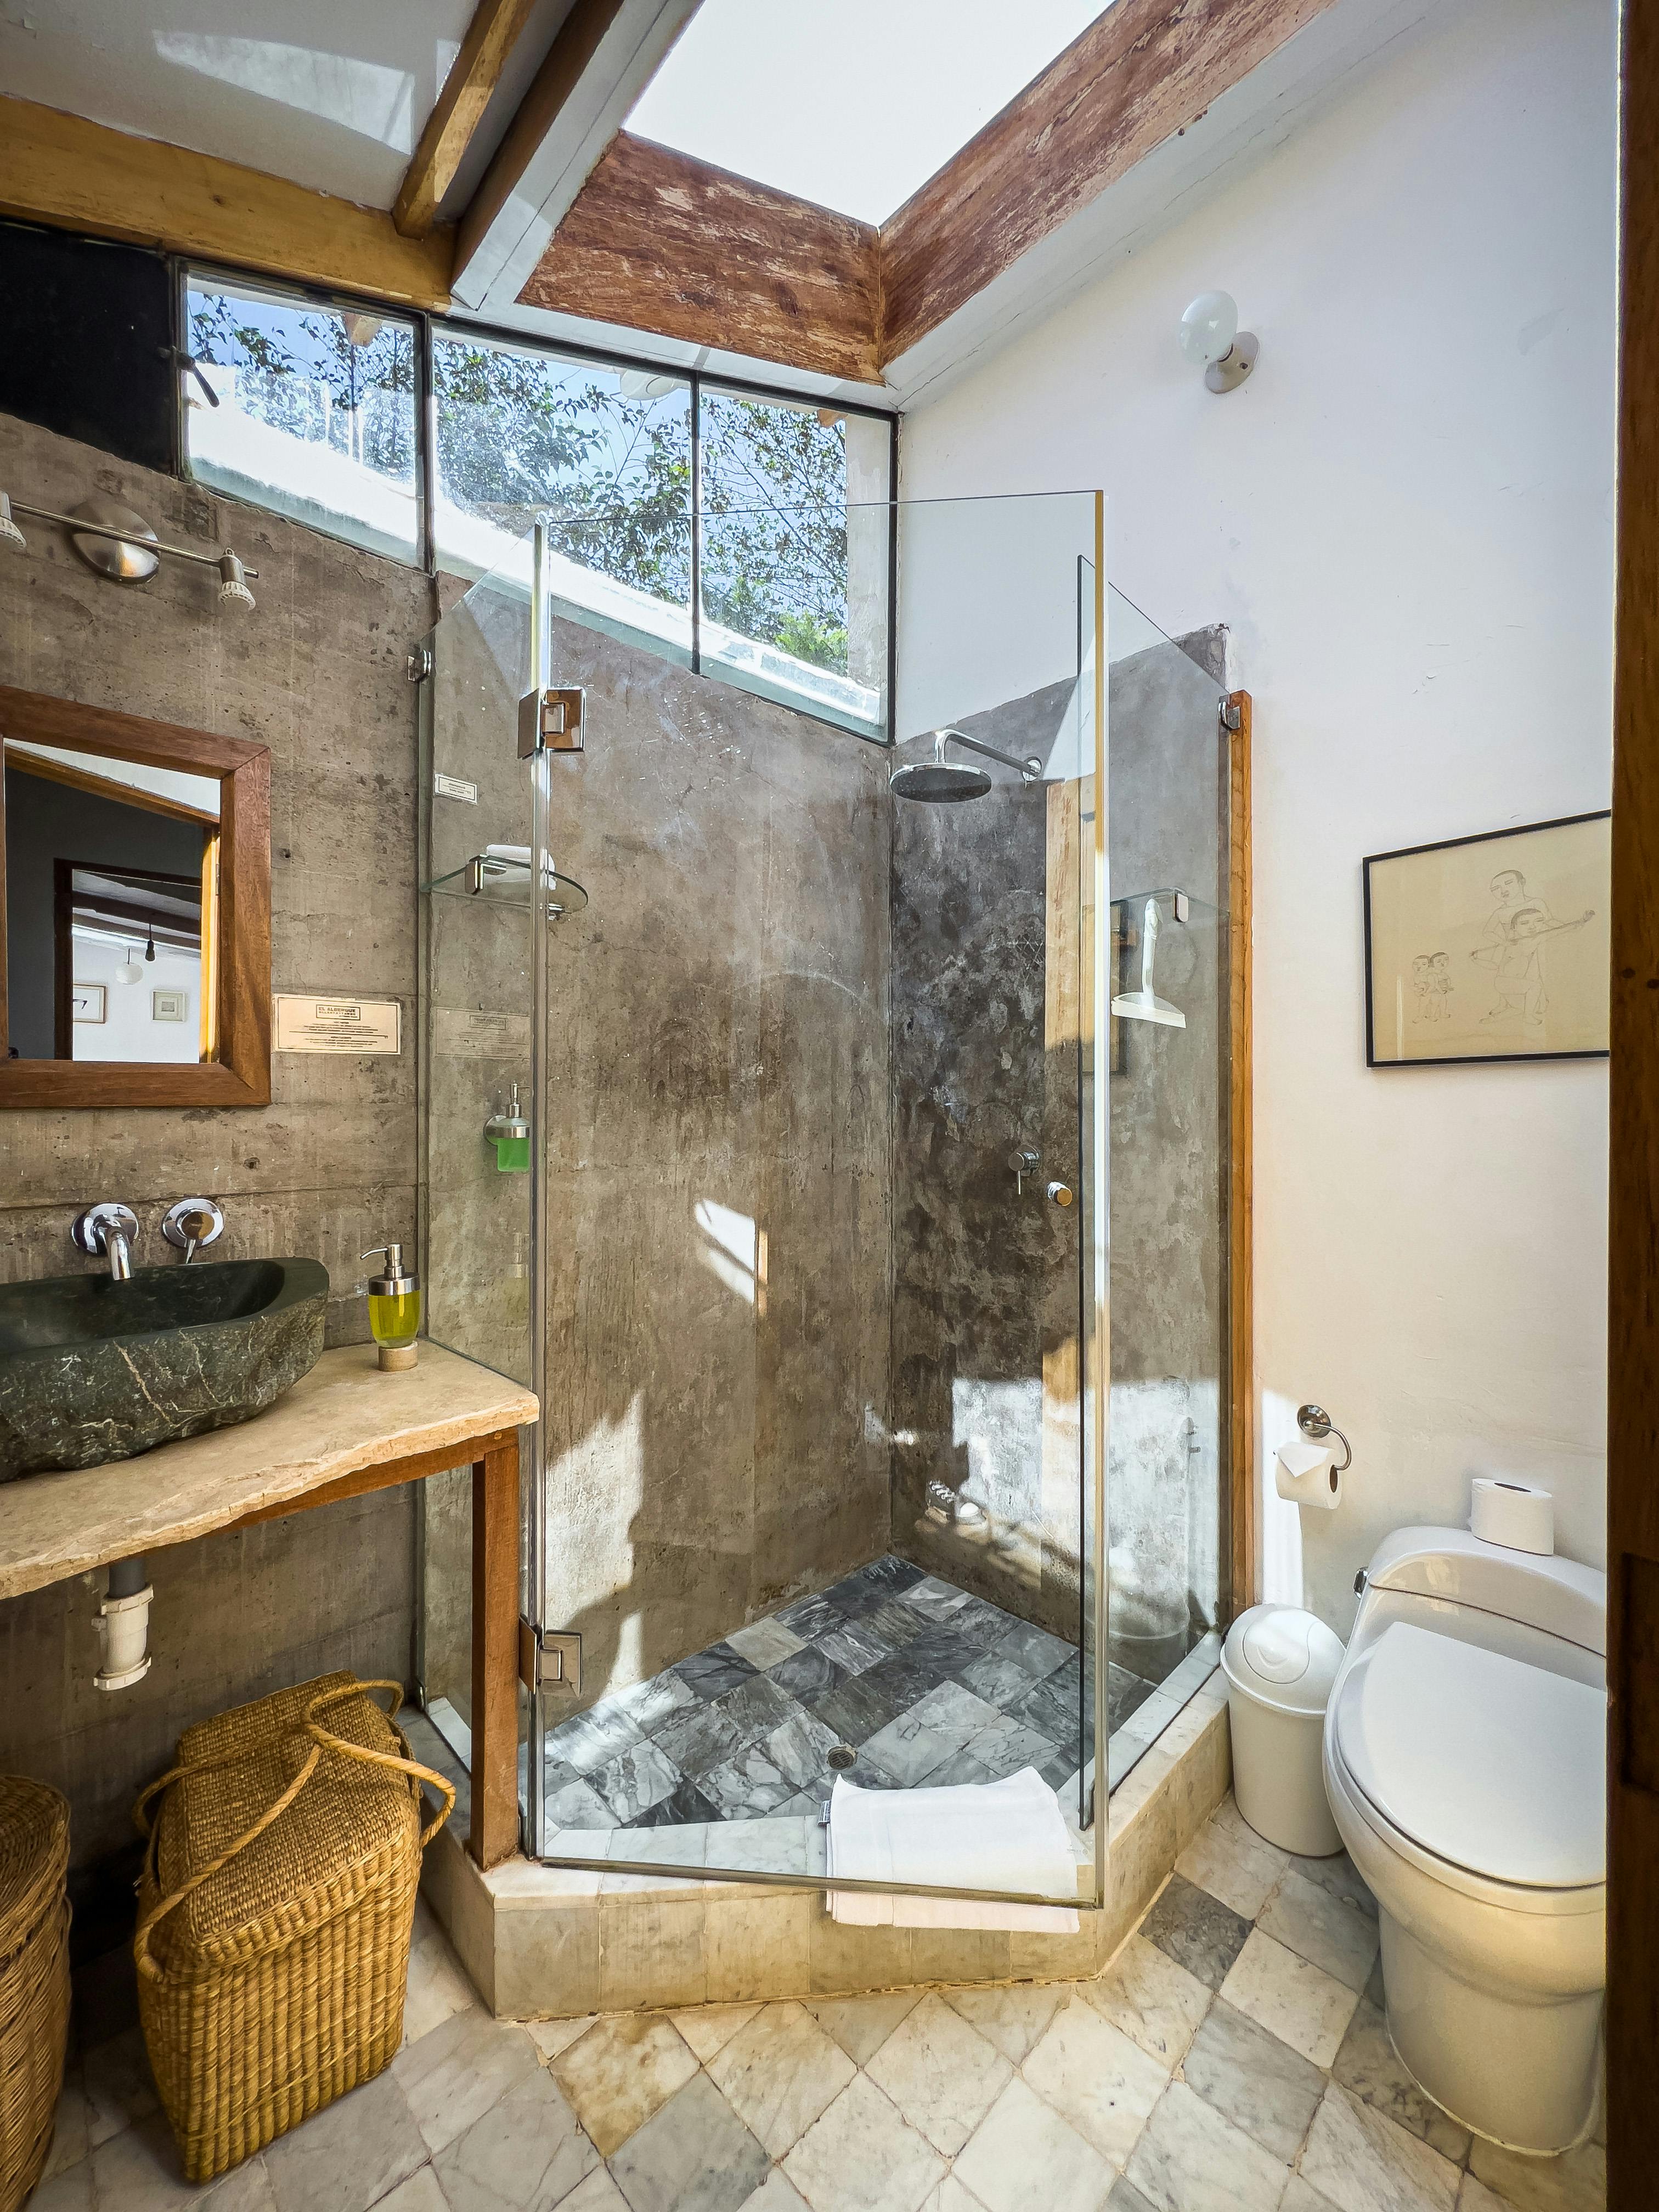 Hab 25 Casita familiar privada estadias largas Ollantaytambo kitchenette baño ducha calefaccion central 2 habitaciones wifi